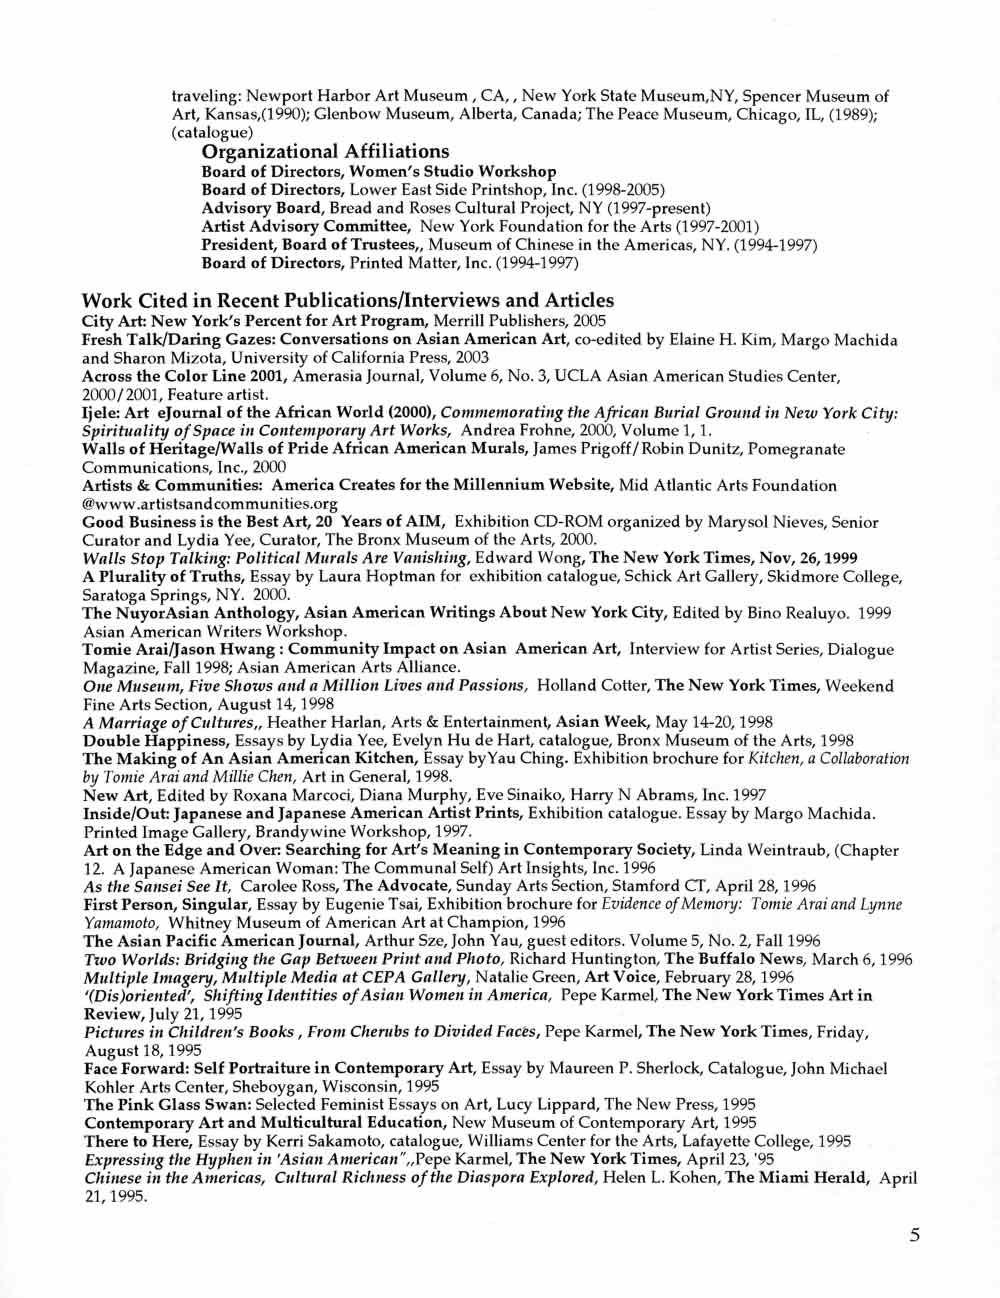 Tomie Arai's Resume, pg 5